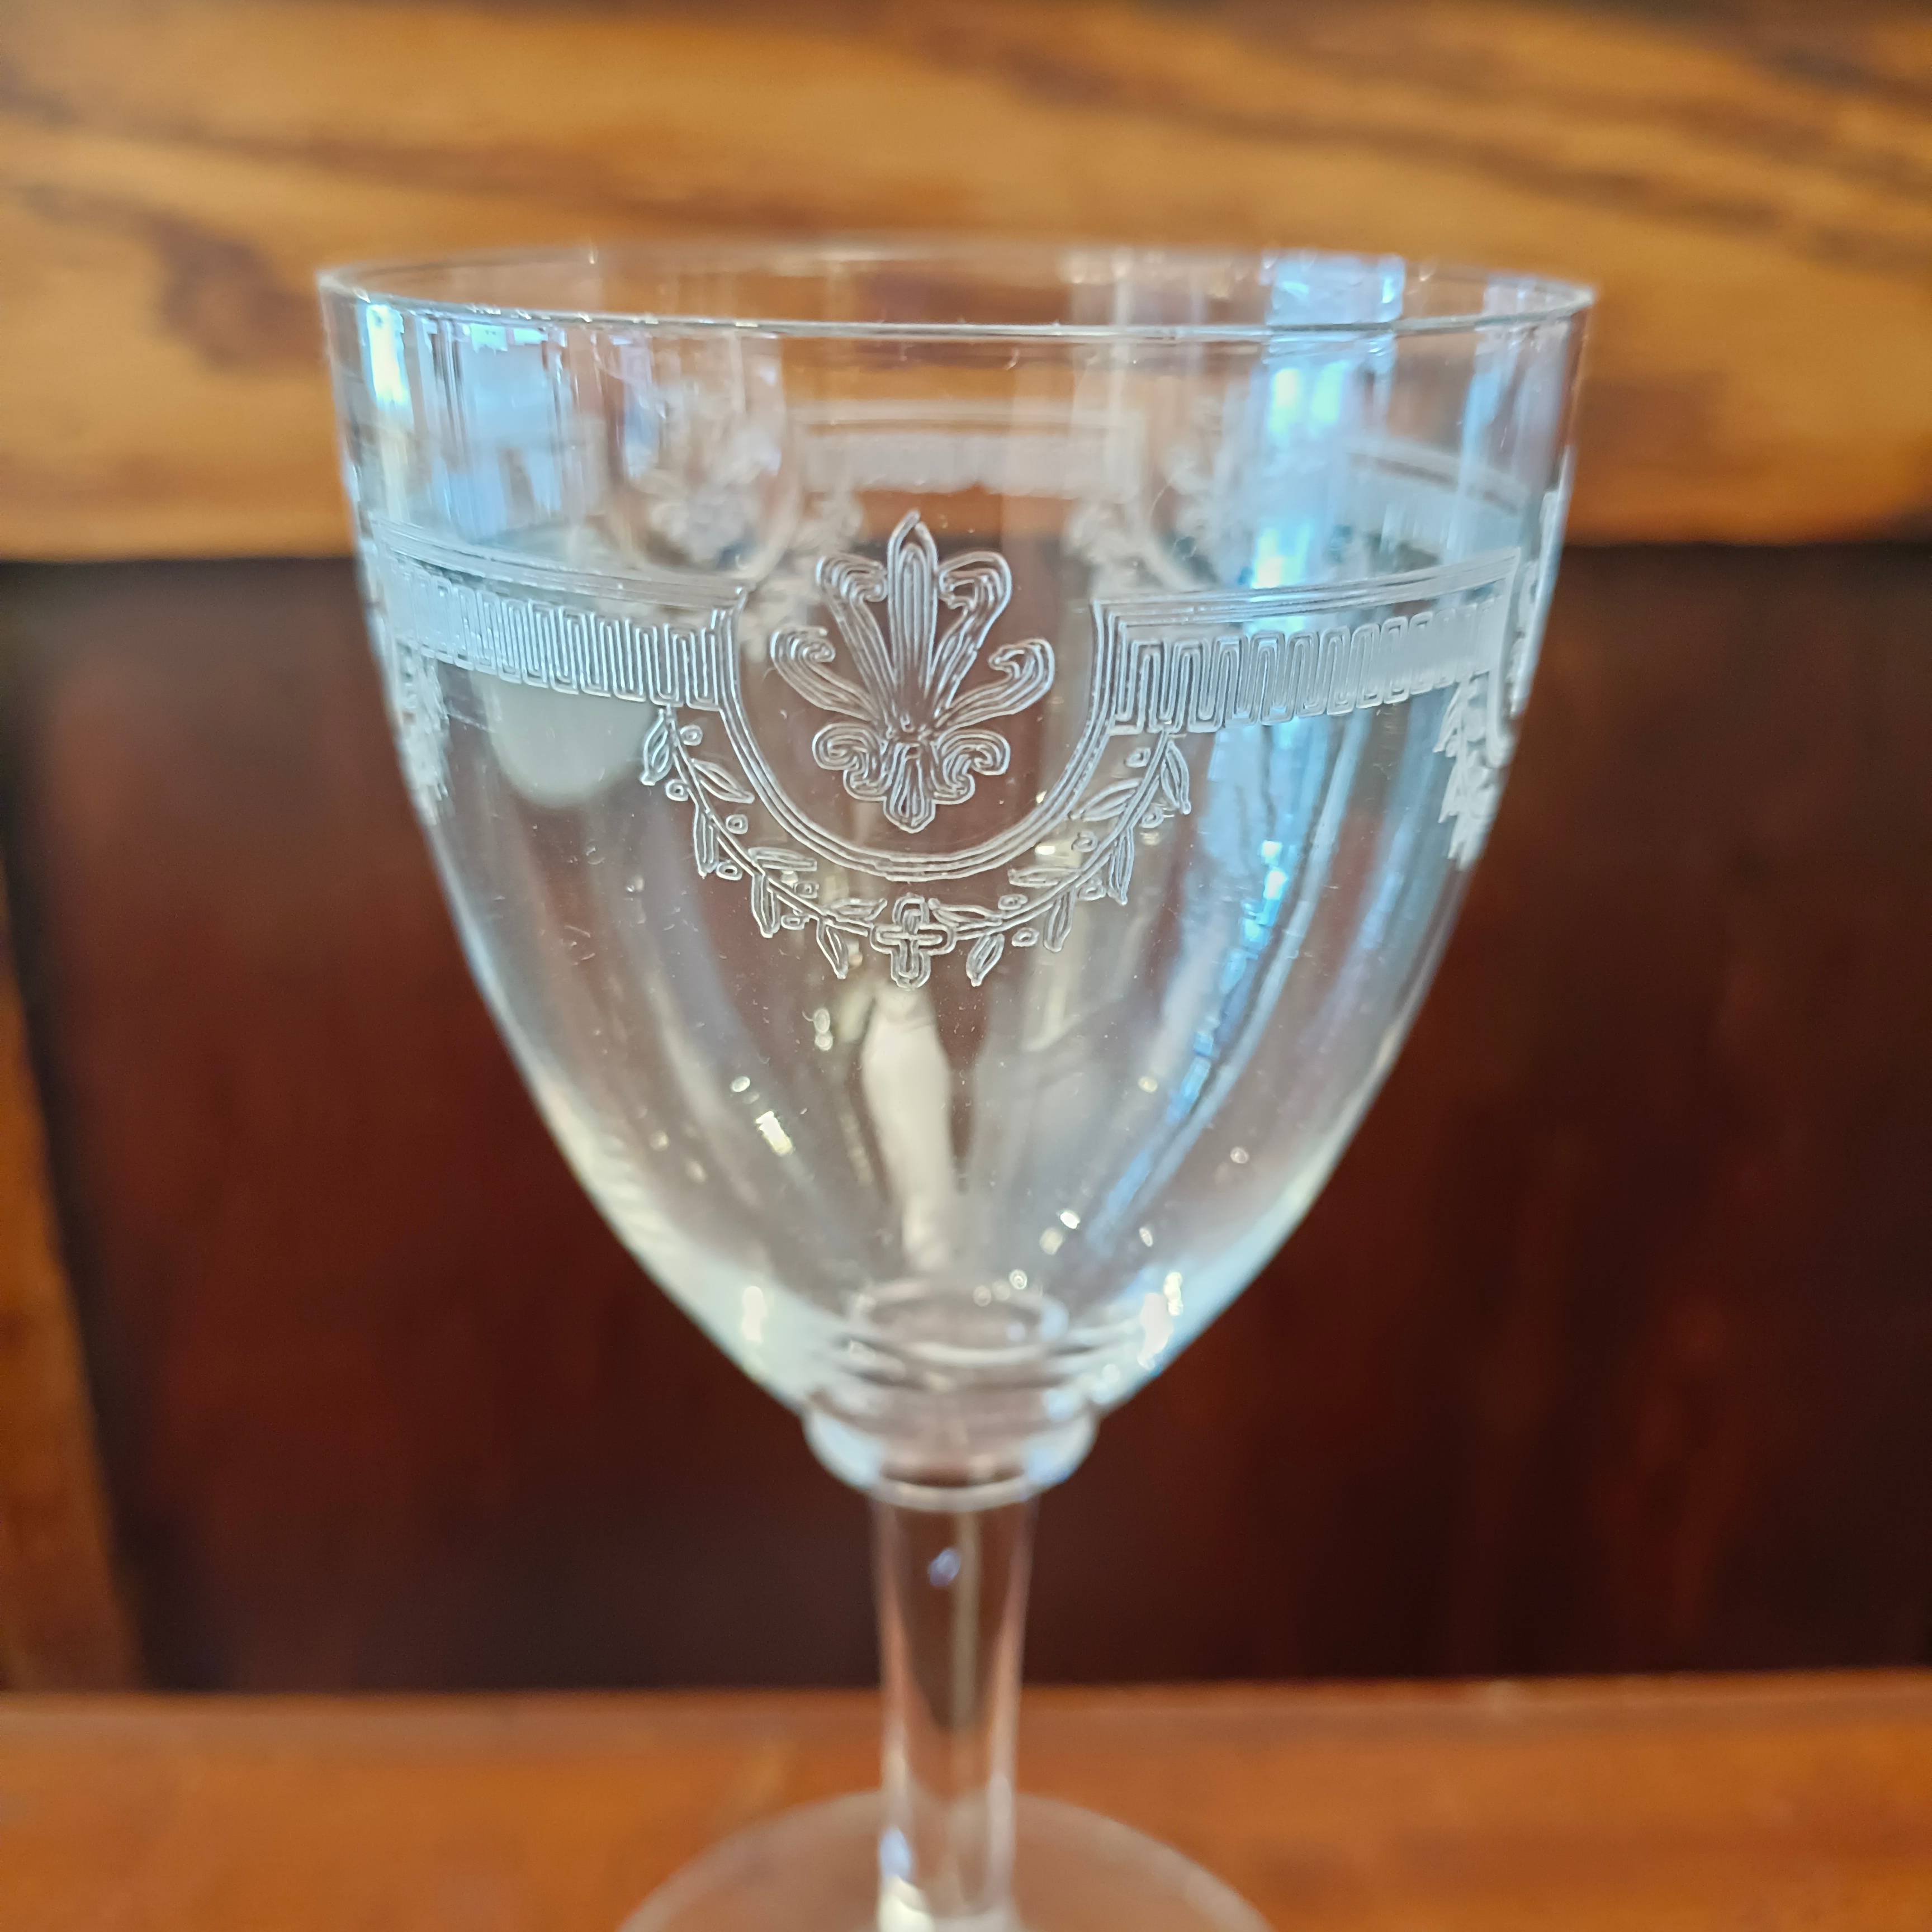 Proantic: Saint Louis, lot de 12 verres à vin blanc en cristal